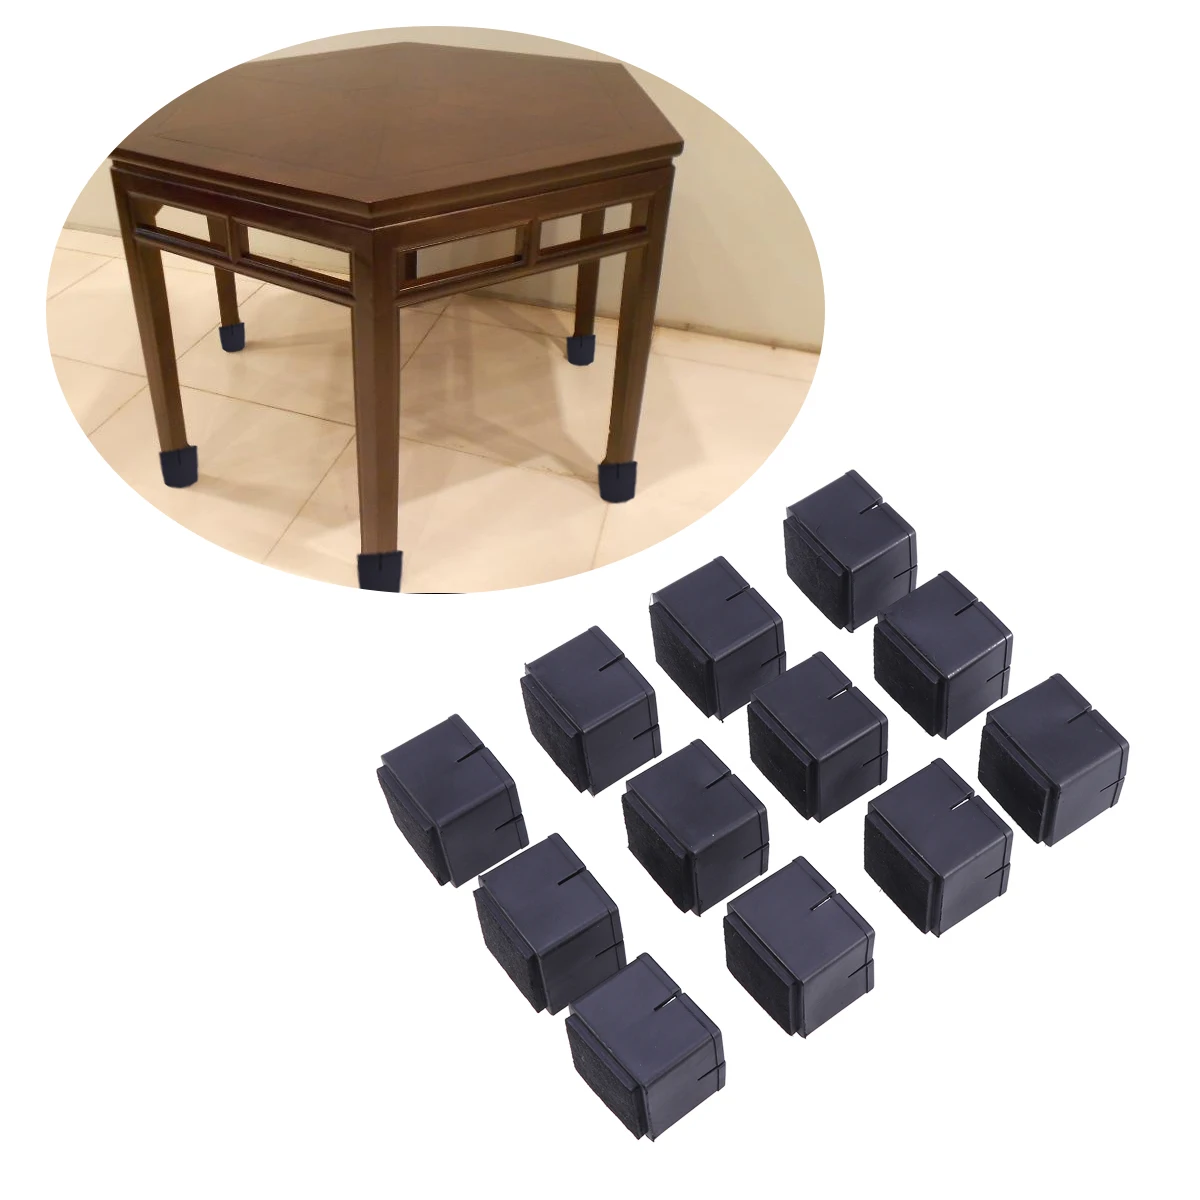 Упаковка из 12 прочных силиконовых колпачков для ног стула протекторы для деревянного пола Чехлы для ног накладки для мебели